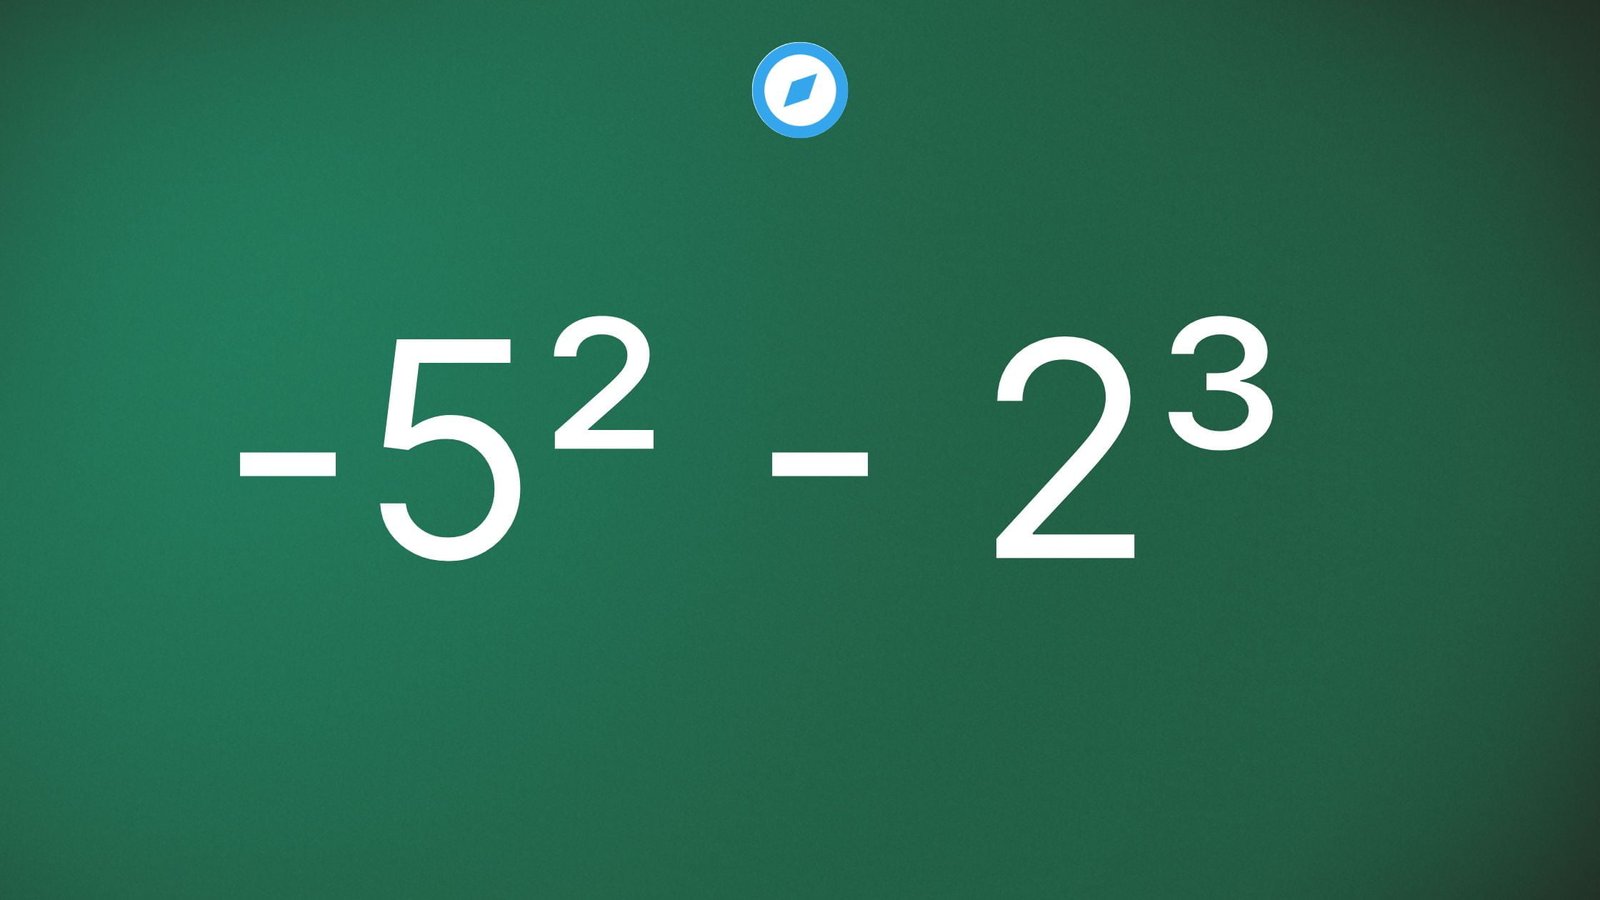 Quadro verde com -5² - 2³ escrito